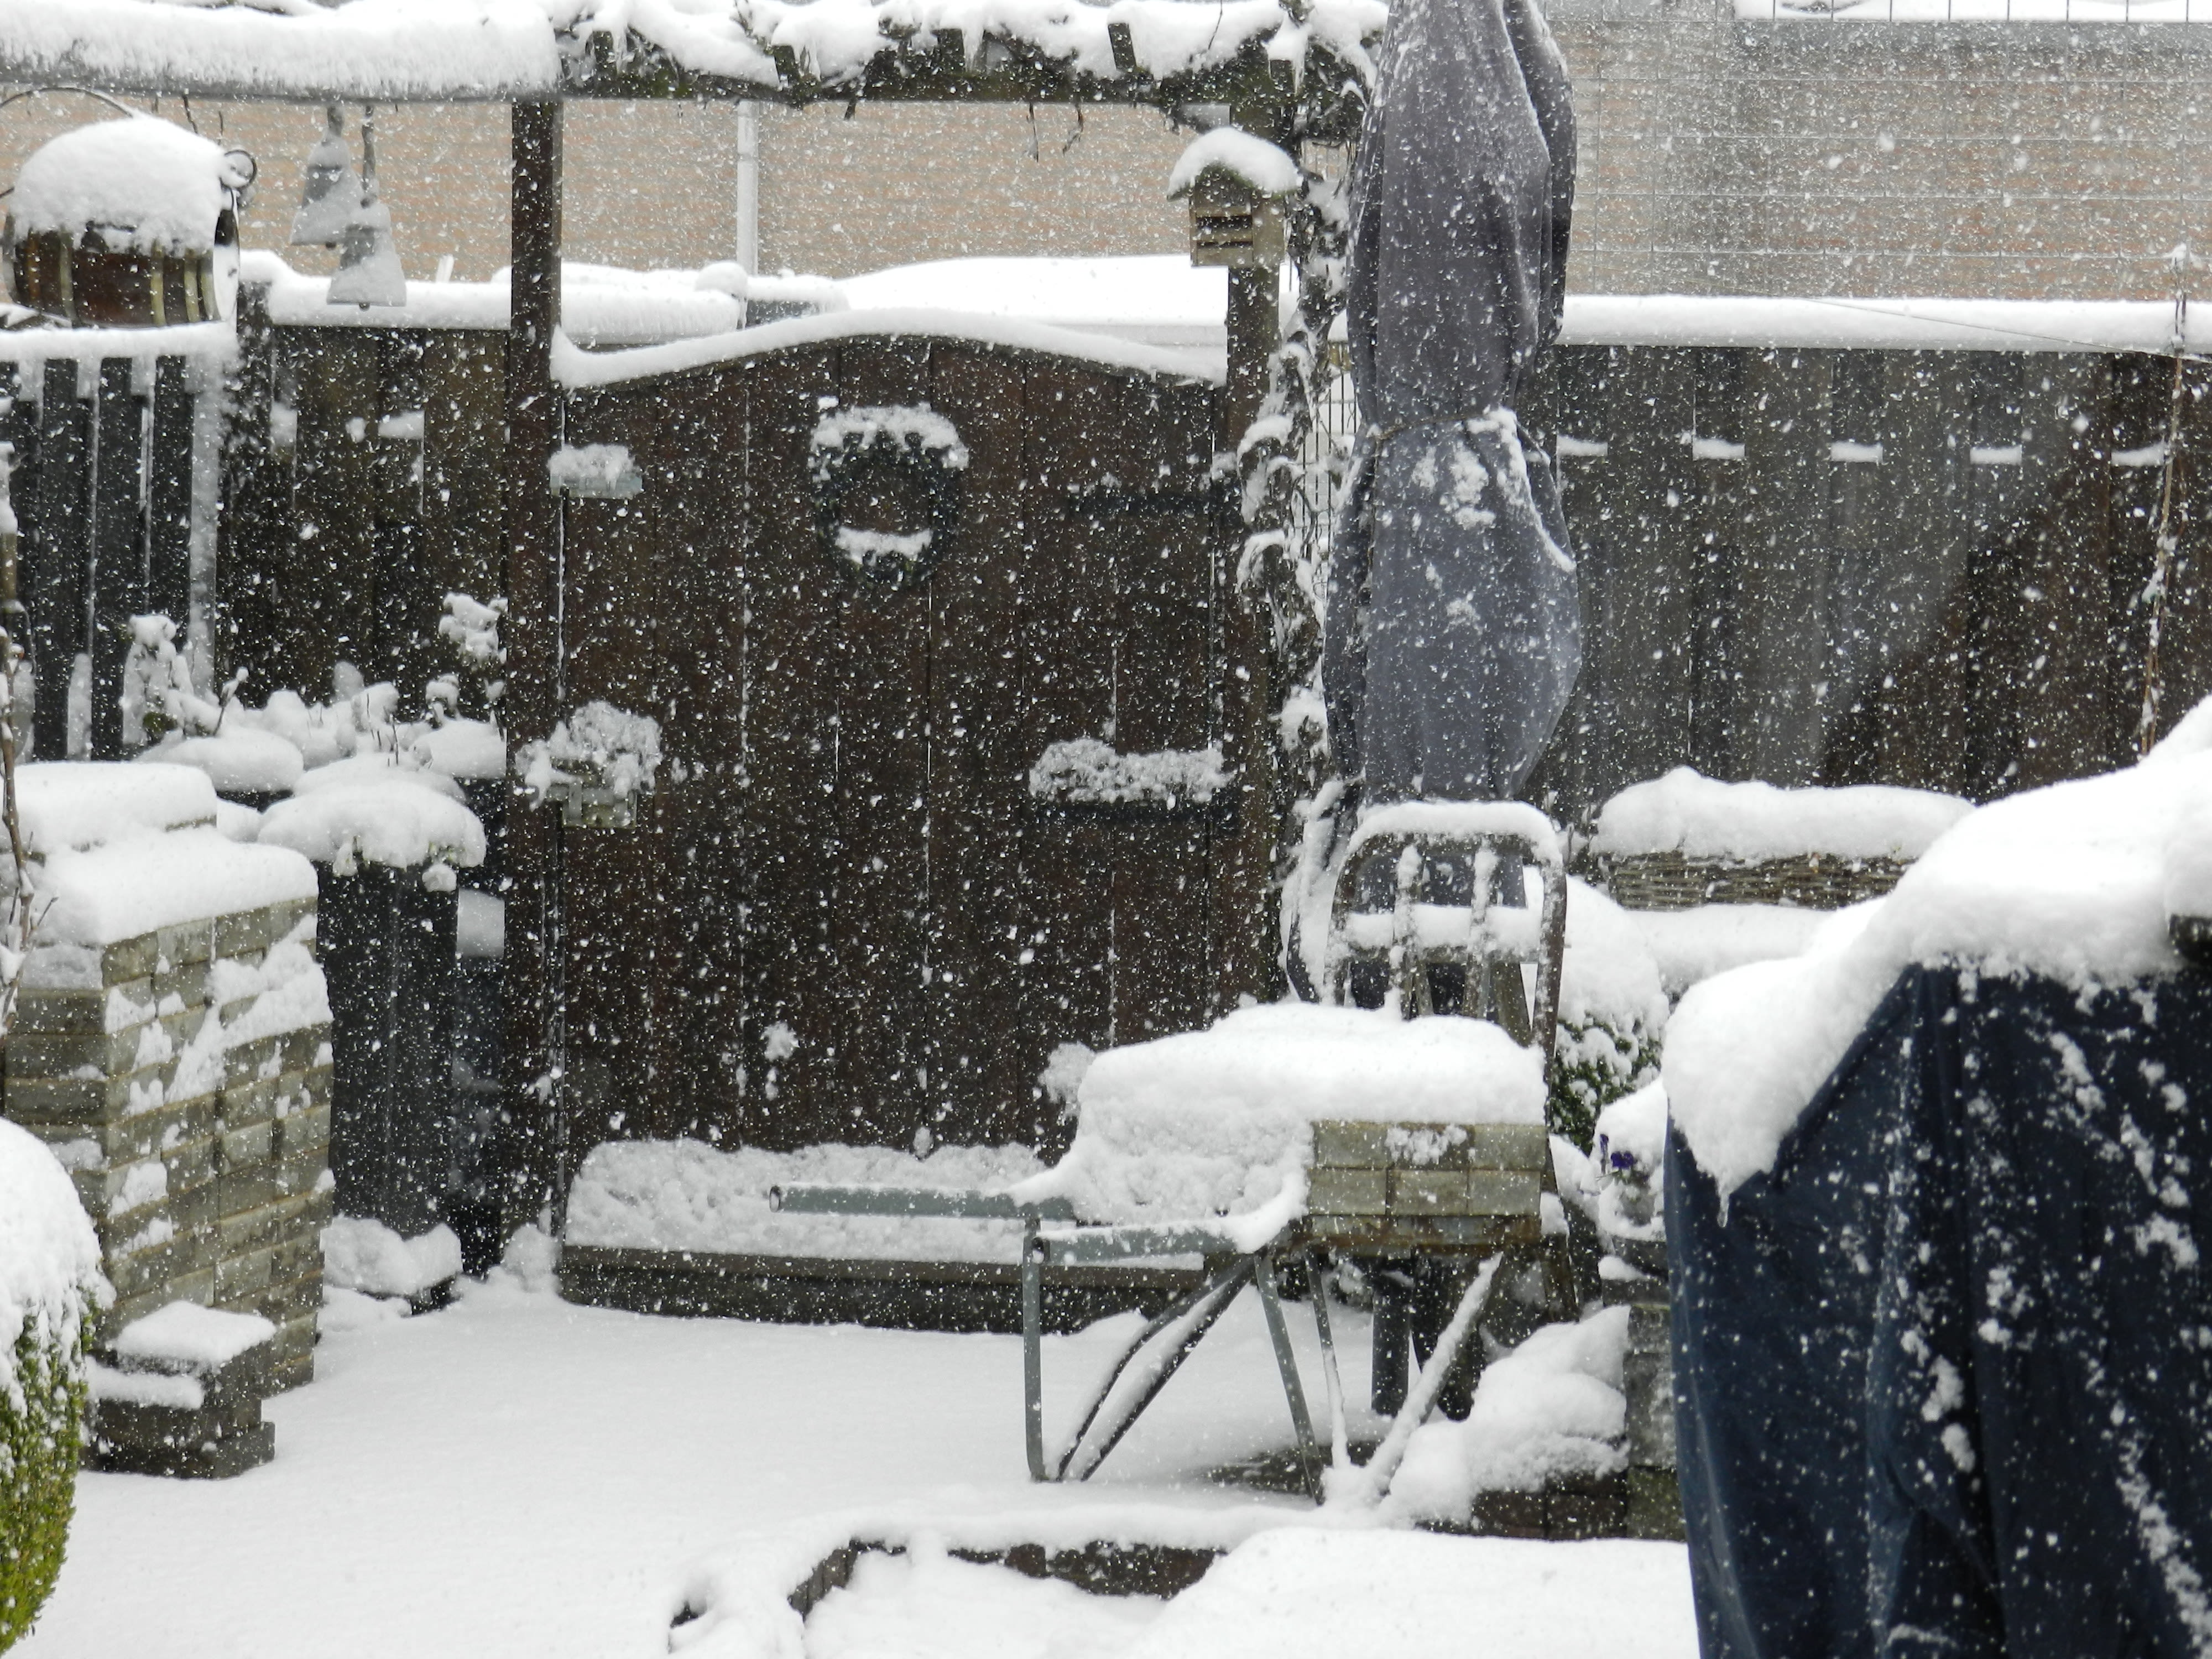 Dik pak sneeuw en sneeuwval in tuin met tuinmeubelen